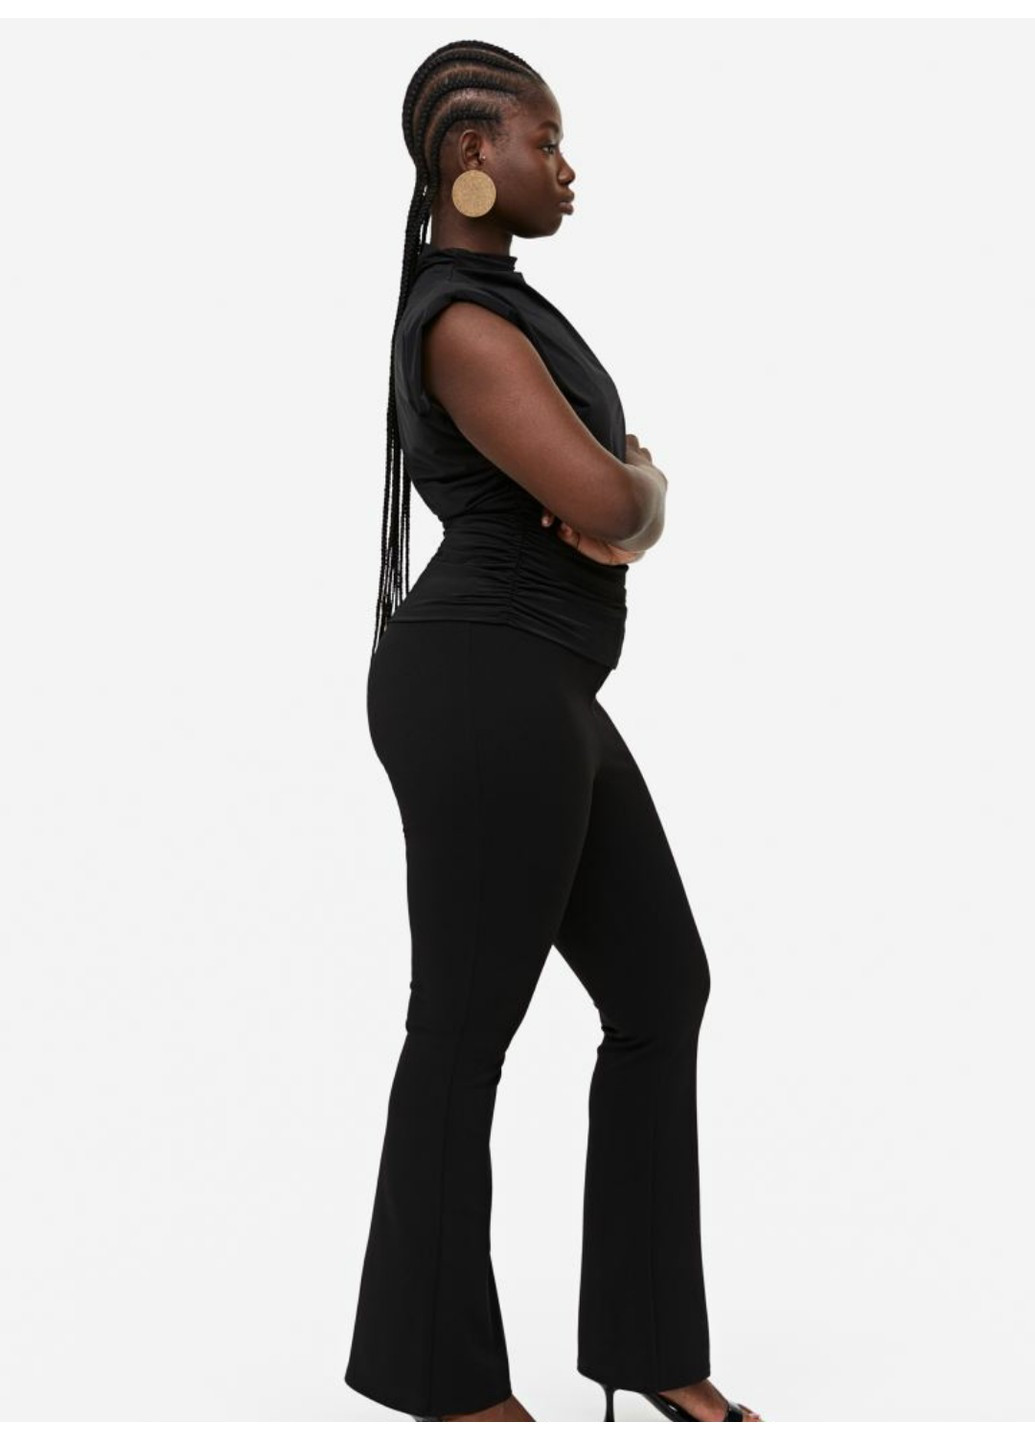 Черные демисезонные женские леггинсы-клеш н&м (56213) xs черные H&M